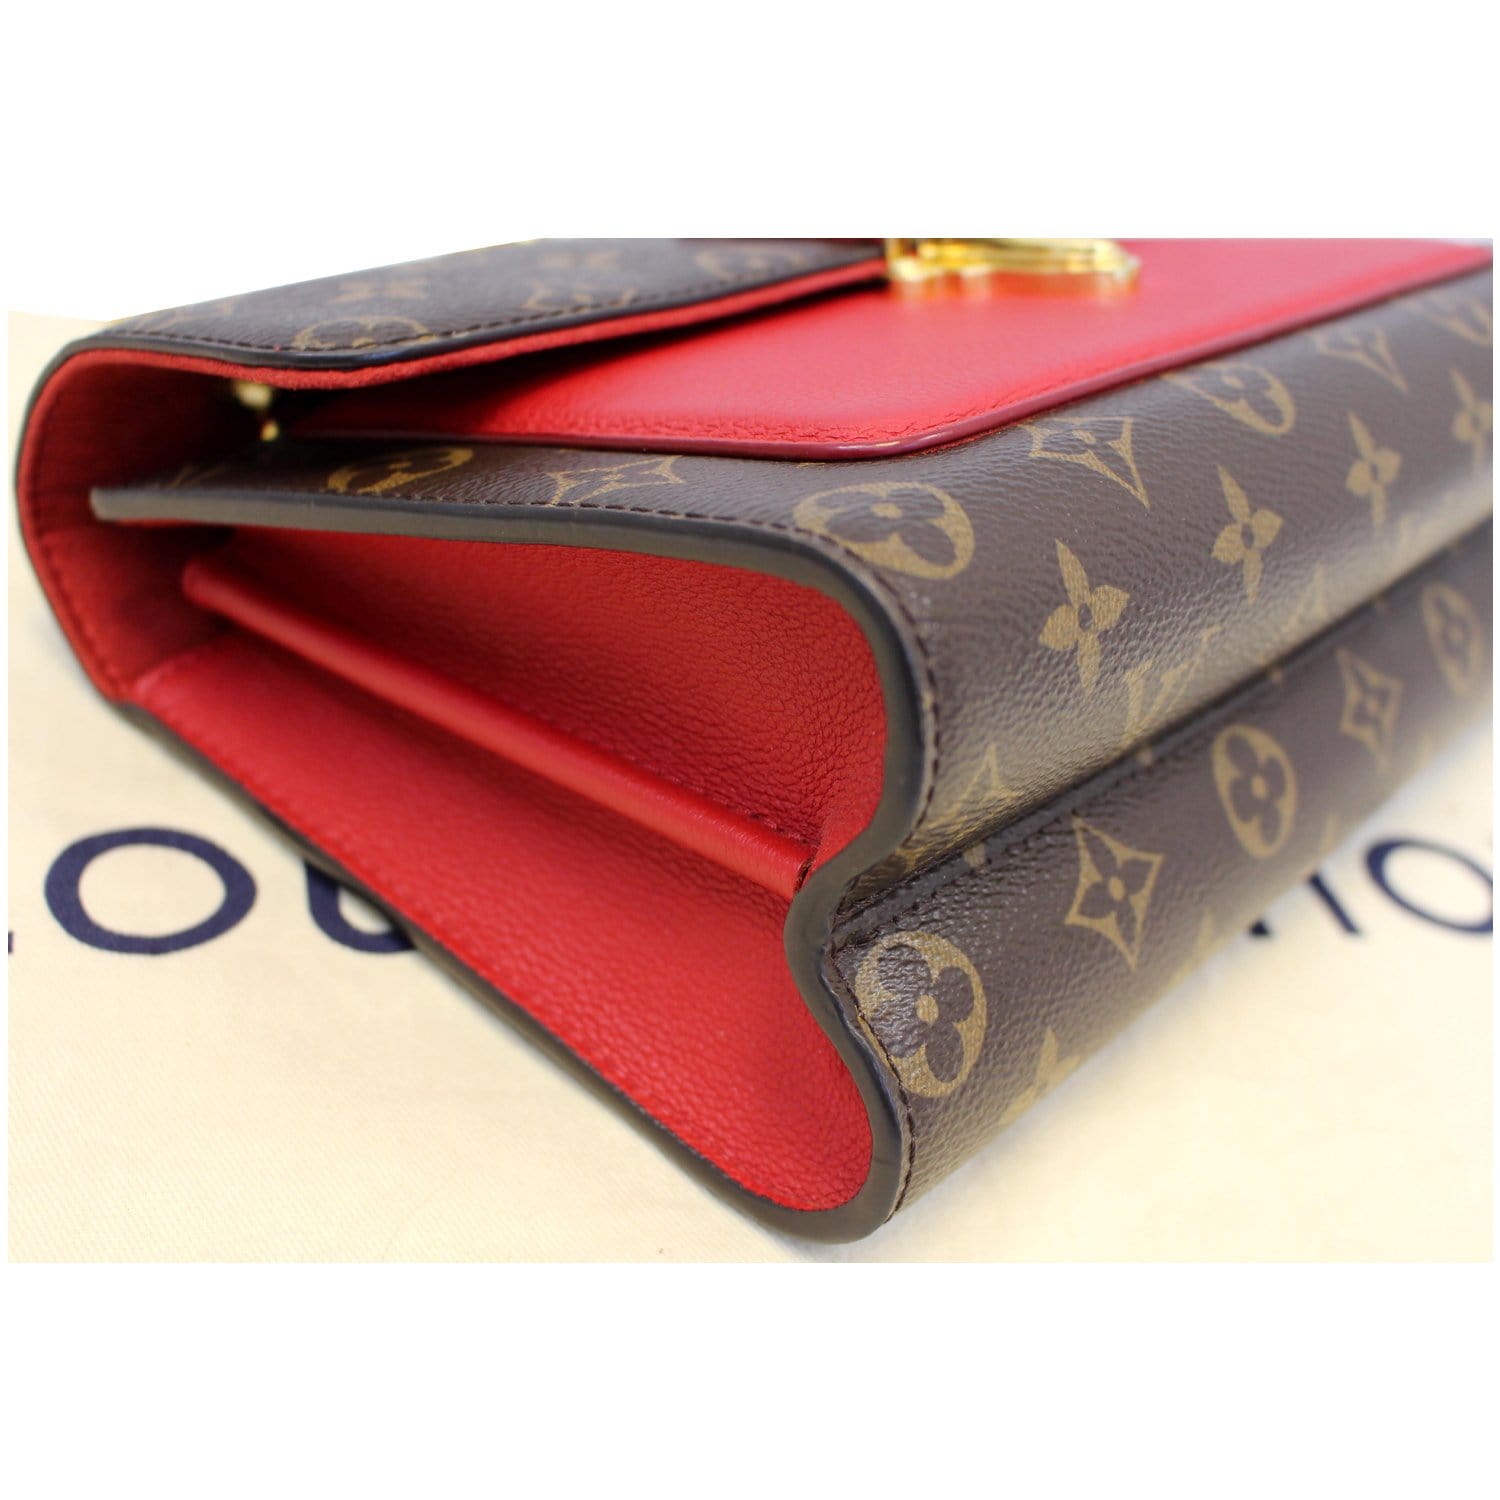 Louis Vuitton Cerise Monogram Victoire Chain Bag – The Closet